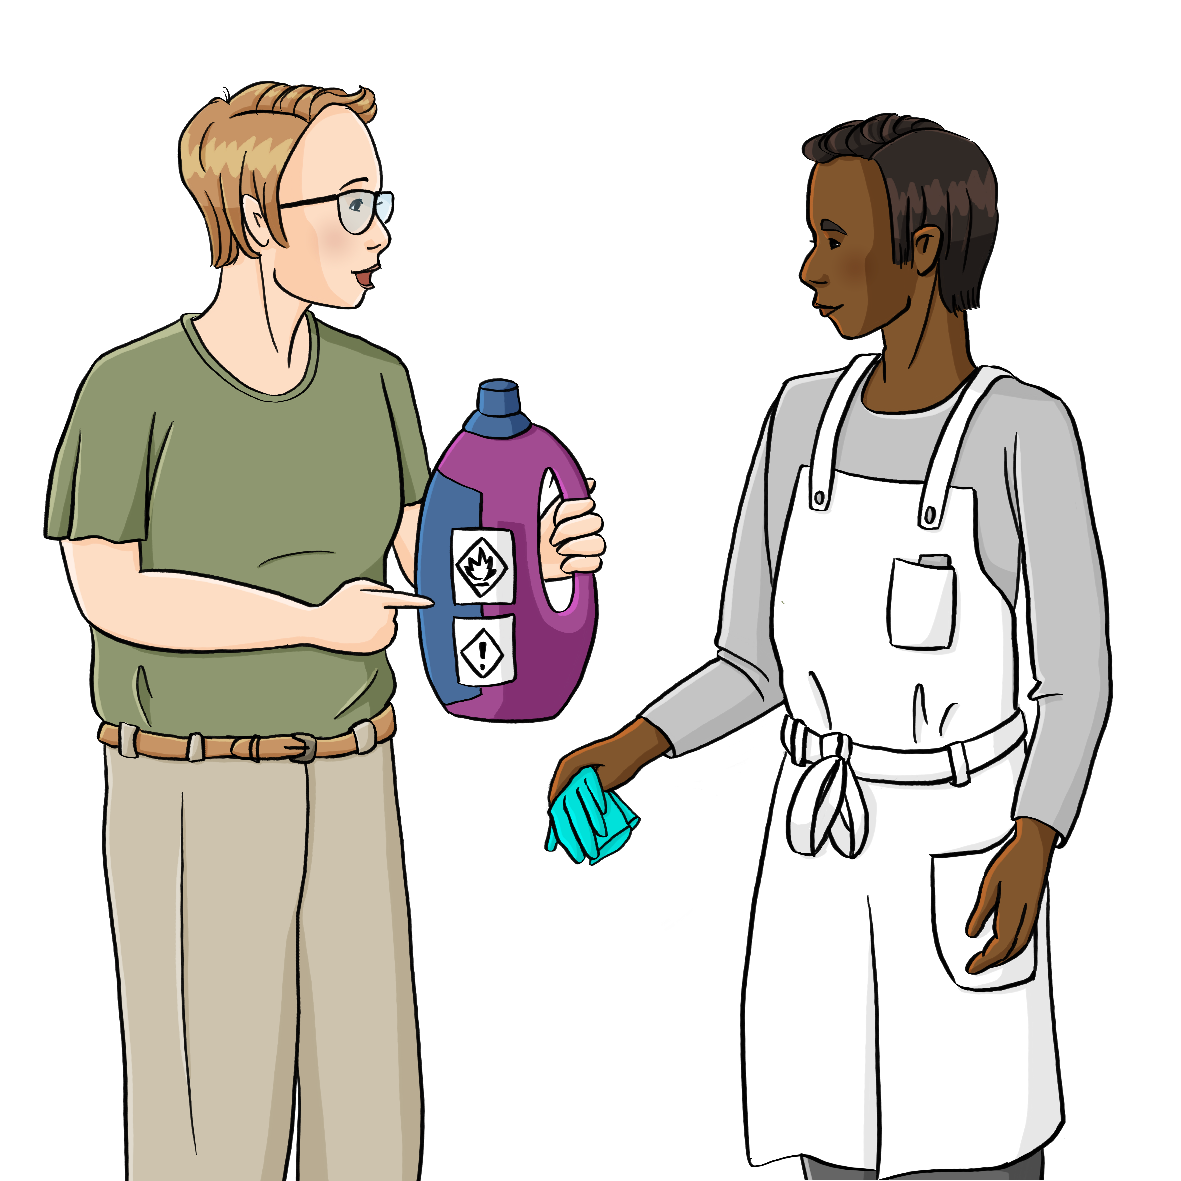 Eine Frau hält eine Plastikflasche mit Gefahrensymbolen in der Hand. Sie zeigt darauf und redet. Neben ihr stehen ein Mann in weißer Schürze. Er hält Handschuhe in der Hand.